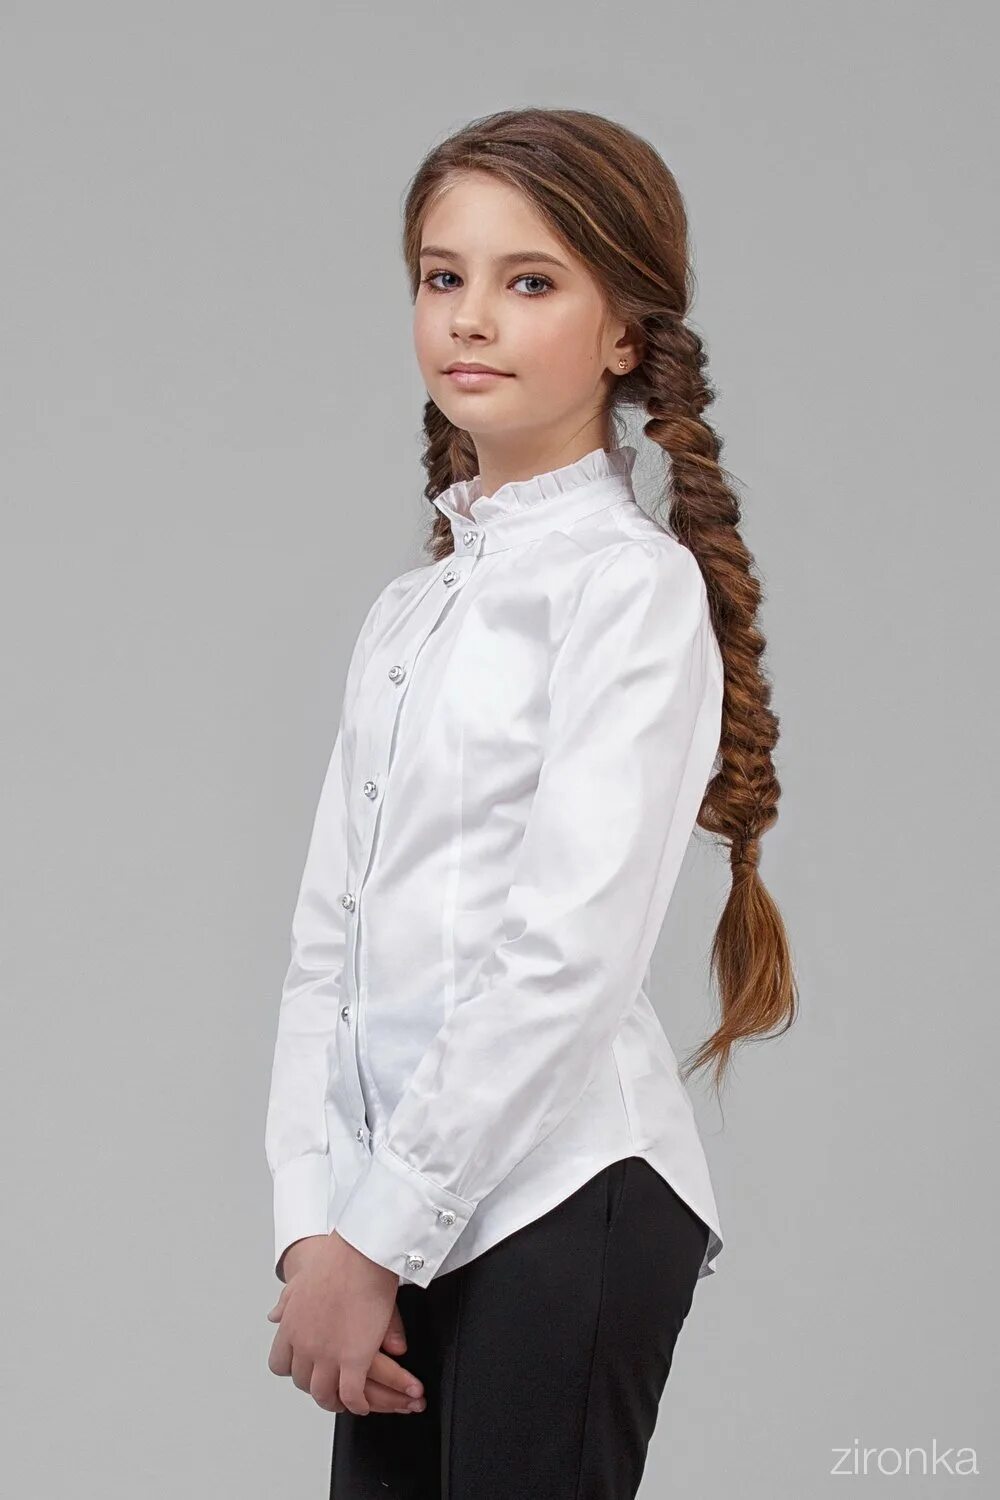 Блузки АЛОЛИКА бл-1809-1. Блузка белая Школьная для девочки. Белая блузка для девочки. Девочка в 12 лет в школьной